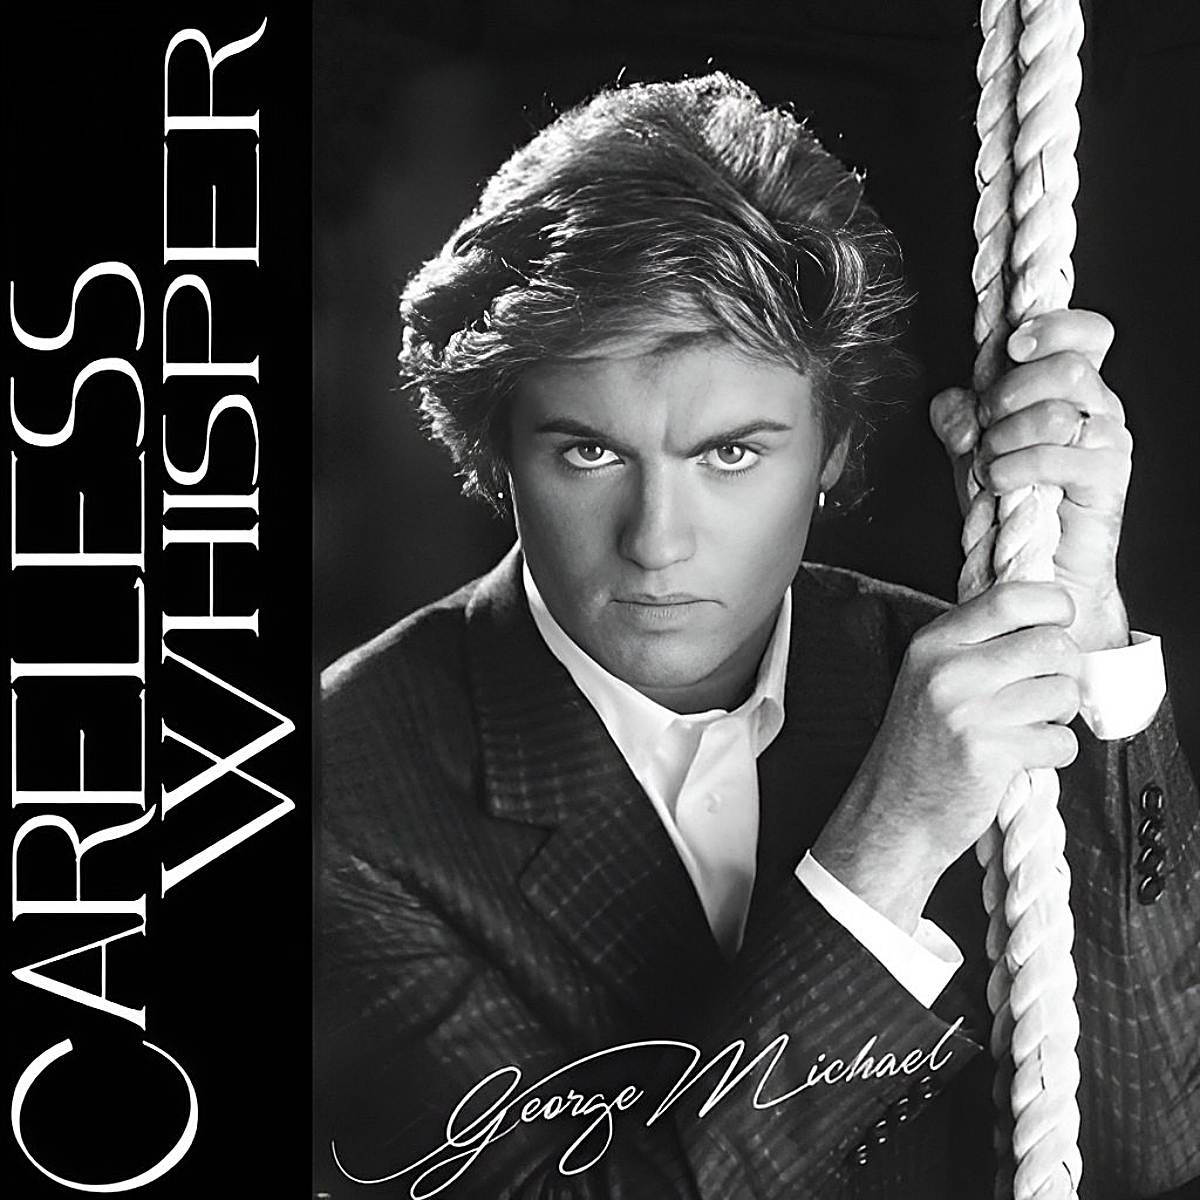 George Michael na capa da canção "Careless Whisper".